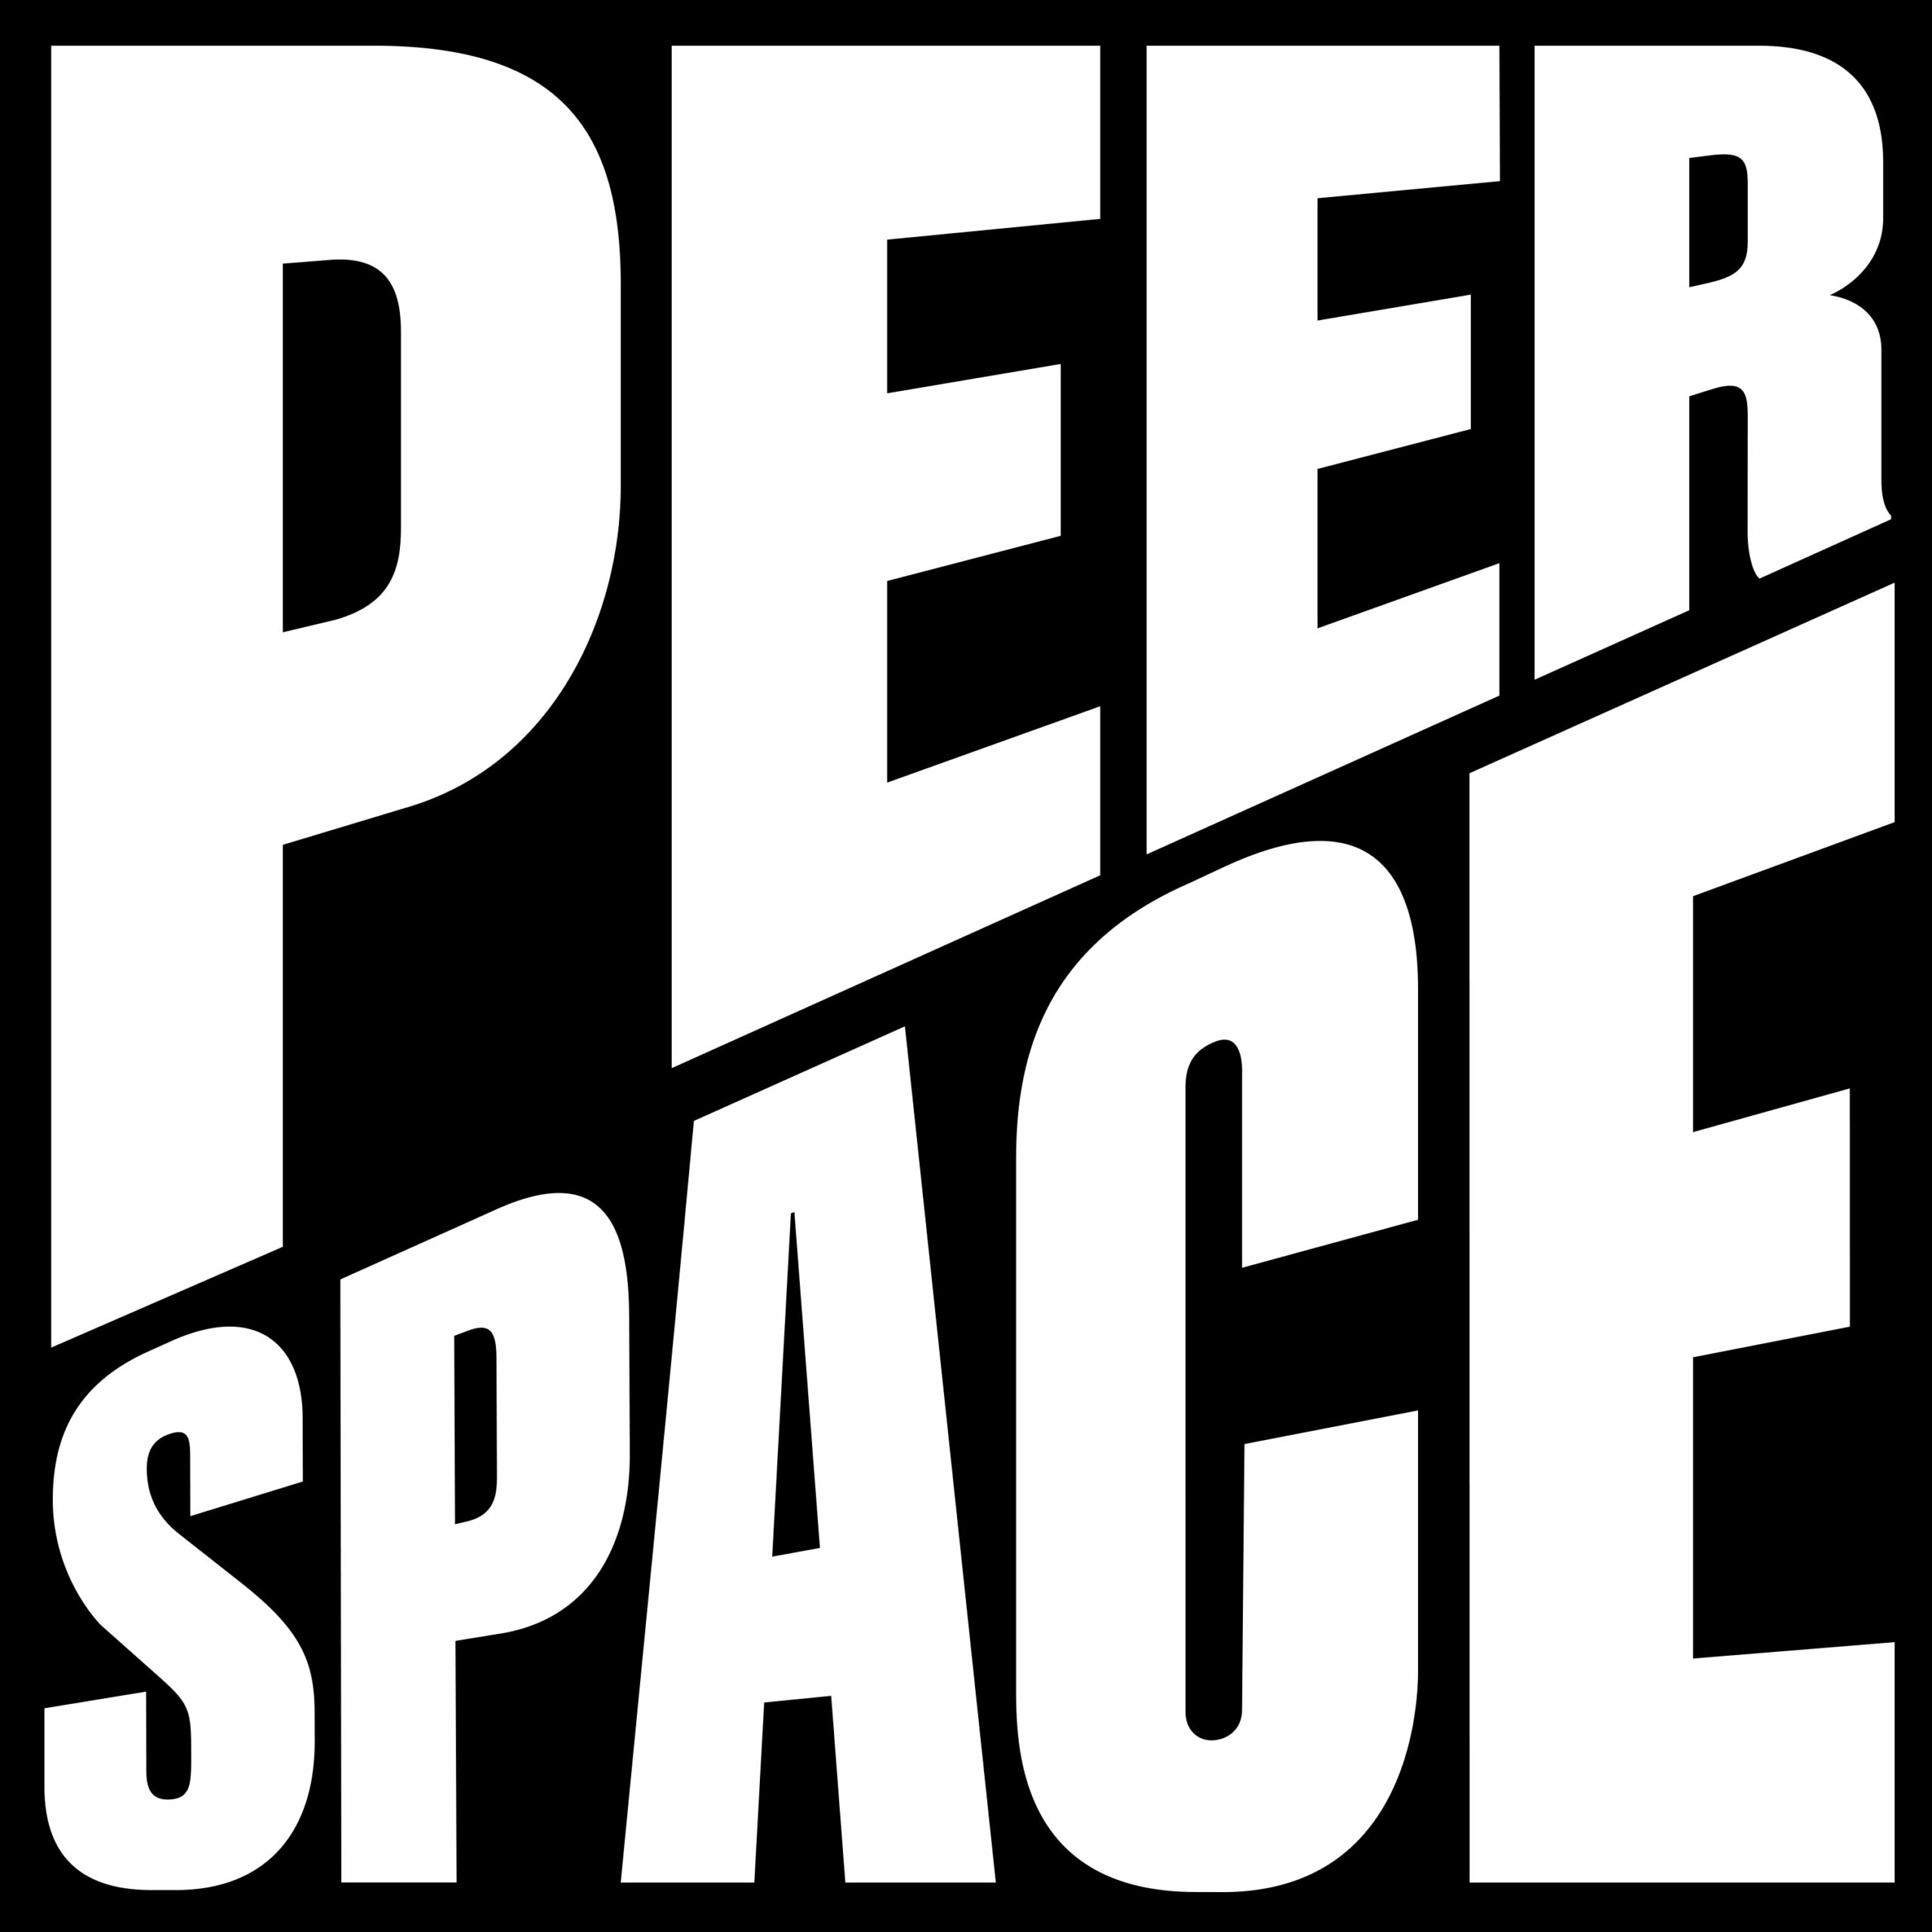 Peerspace, Matthijs van Leeuwen, Matt van Leeuwen, Mother Design, Logo, Identity